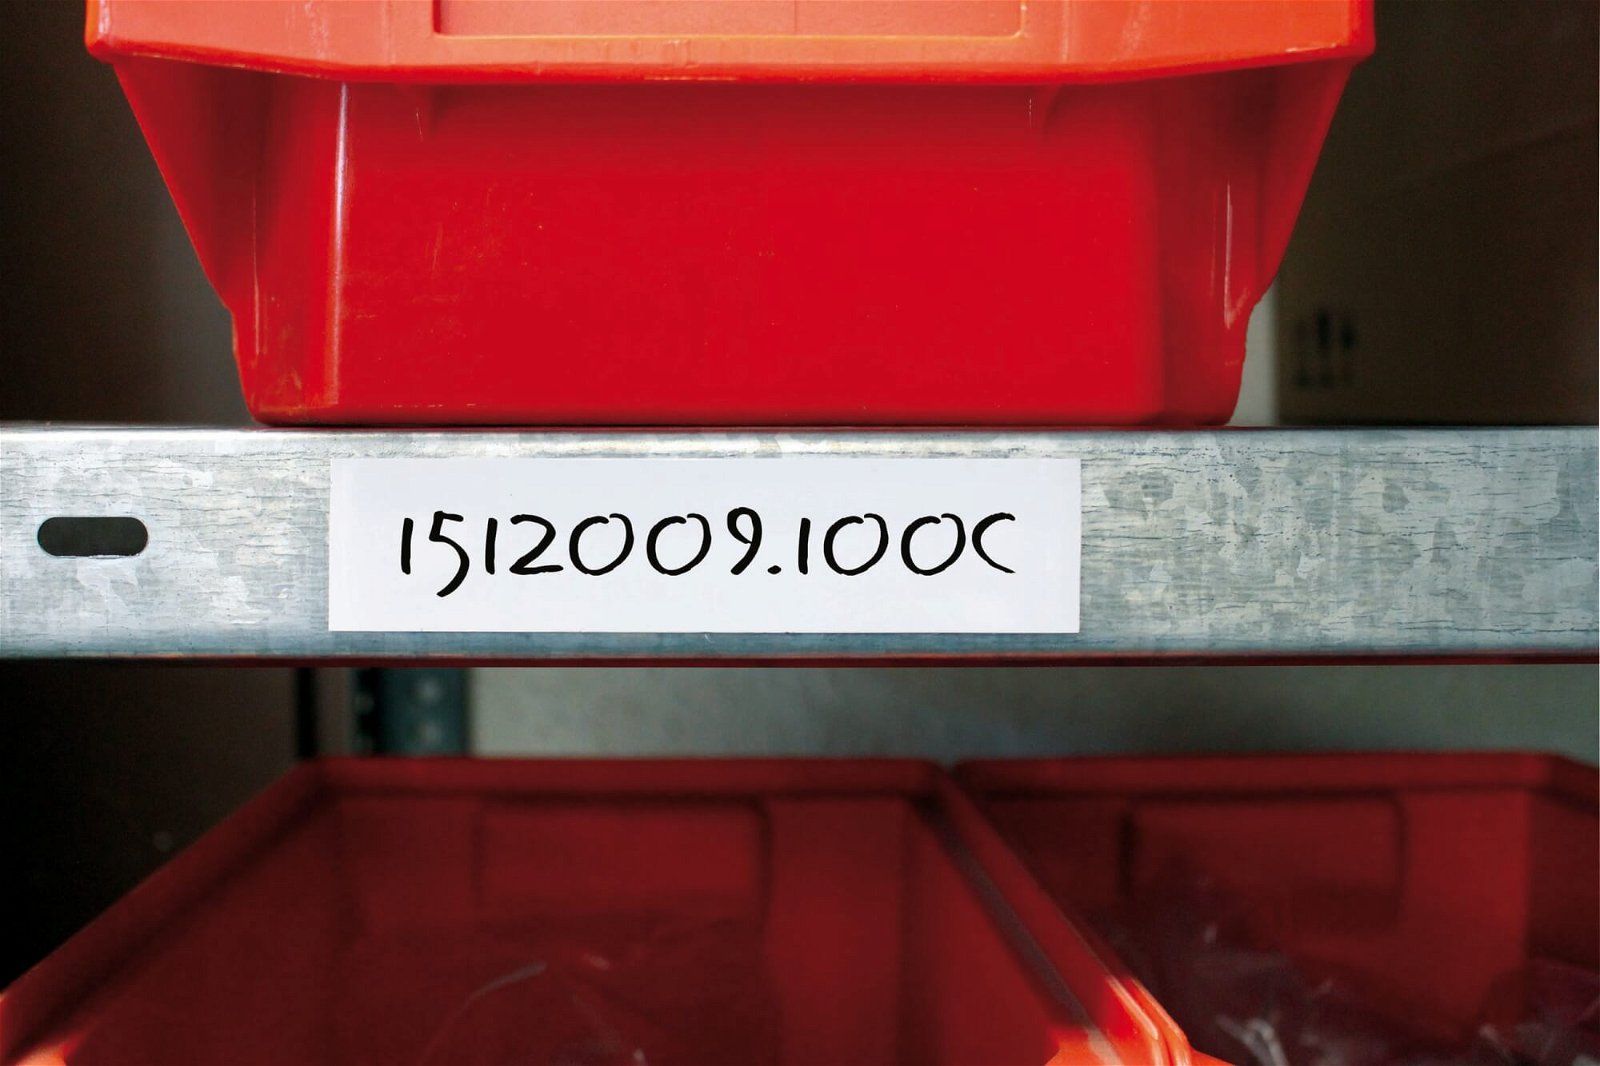 Kennzeichnungsband magnet- haftend, 10 m x 30 mm x 1 mm, weiß